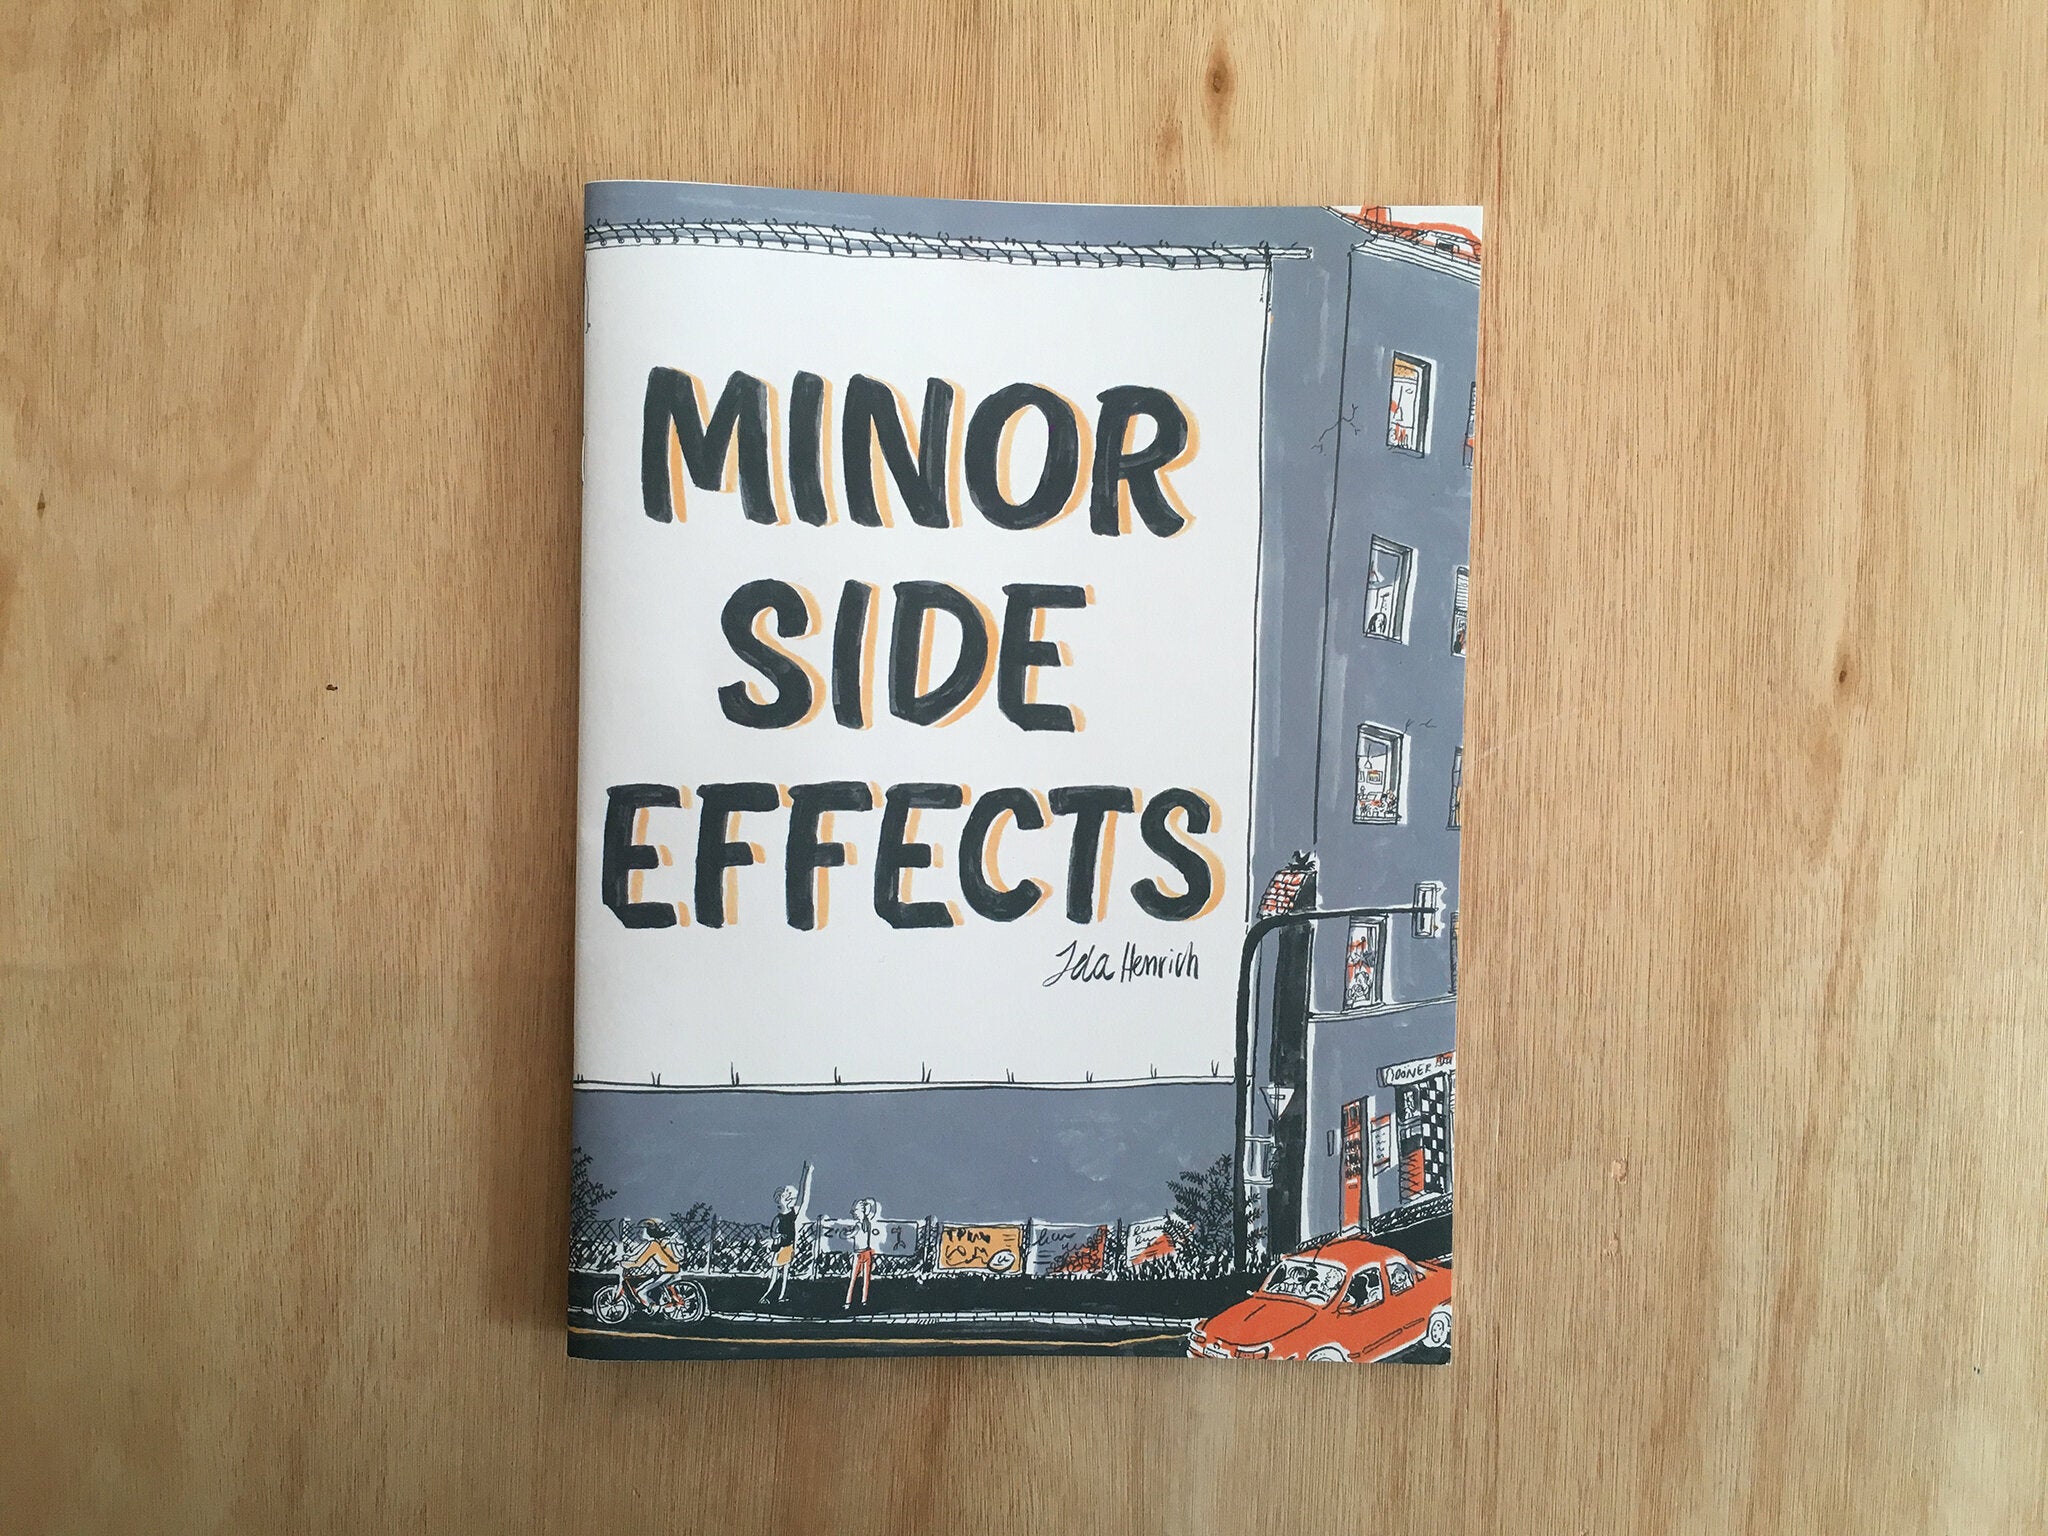 MINOR SIDE EFFECTS by Ida Henrich